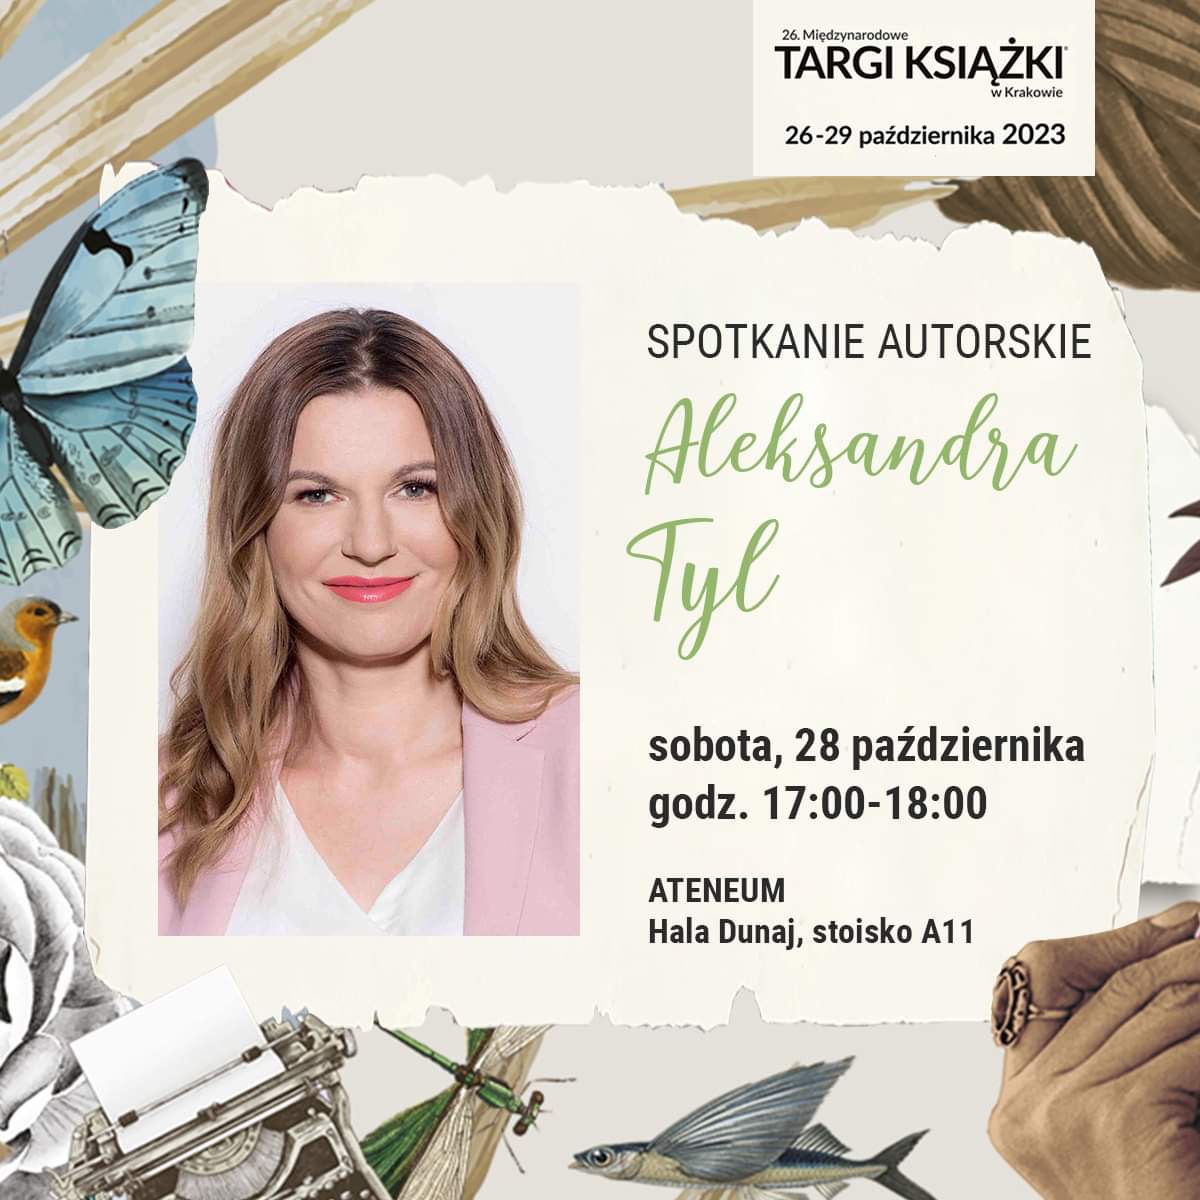 Targi Książki w Krakowie – spotkanie